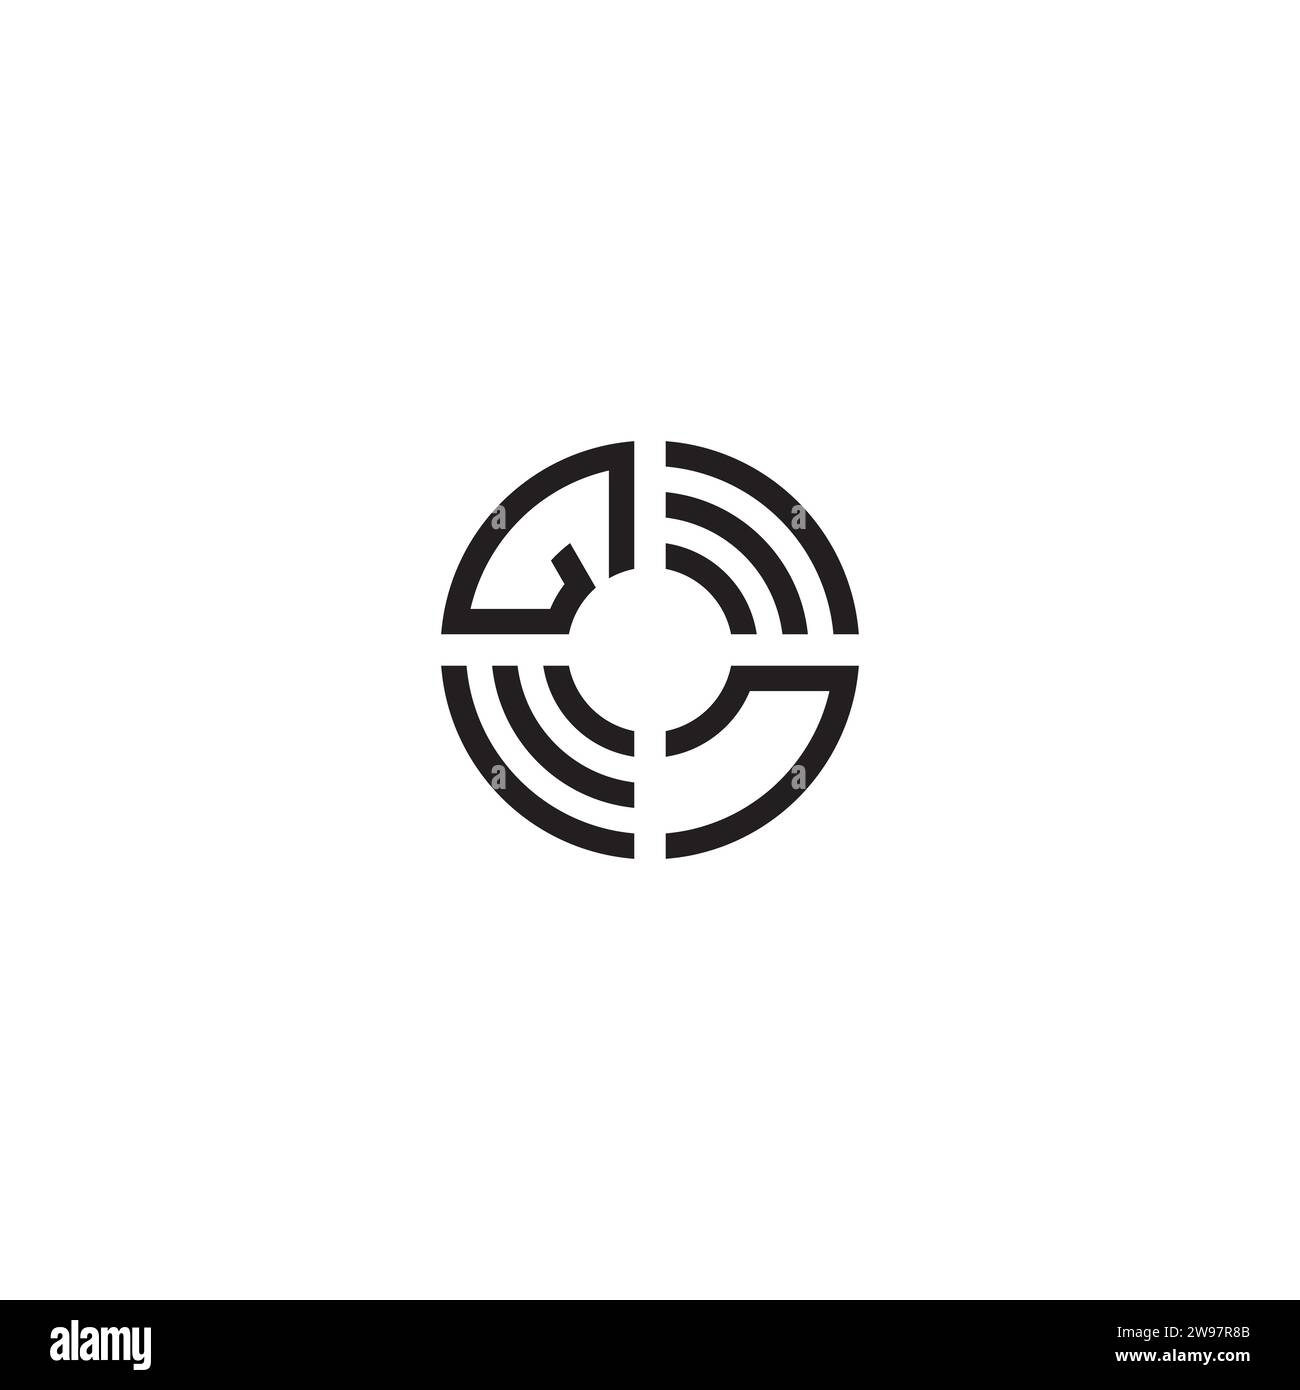 Concept initial de logo de cercle de NG dans la conception professionnelle de haute qualité qui imprimera bien sur tous les supports d'impression Illustration de Vecteur